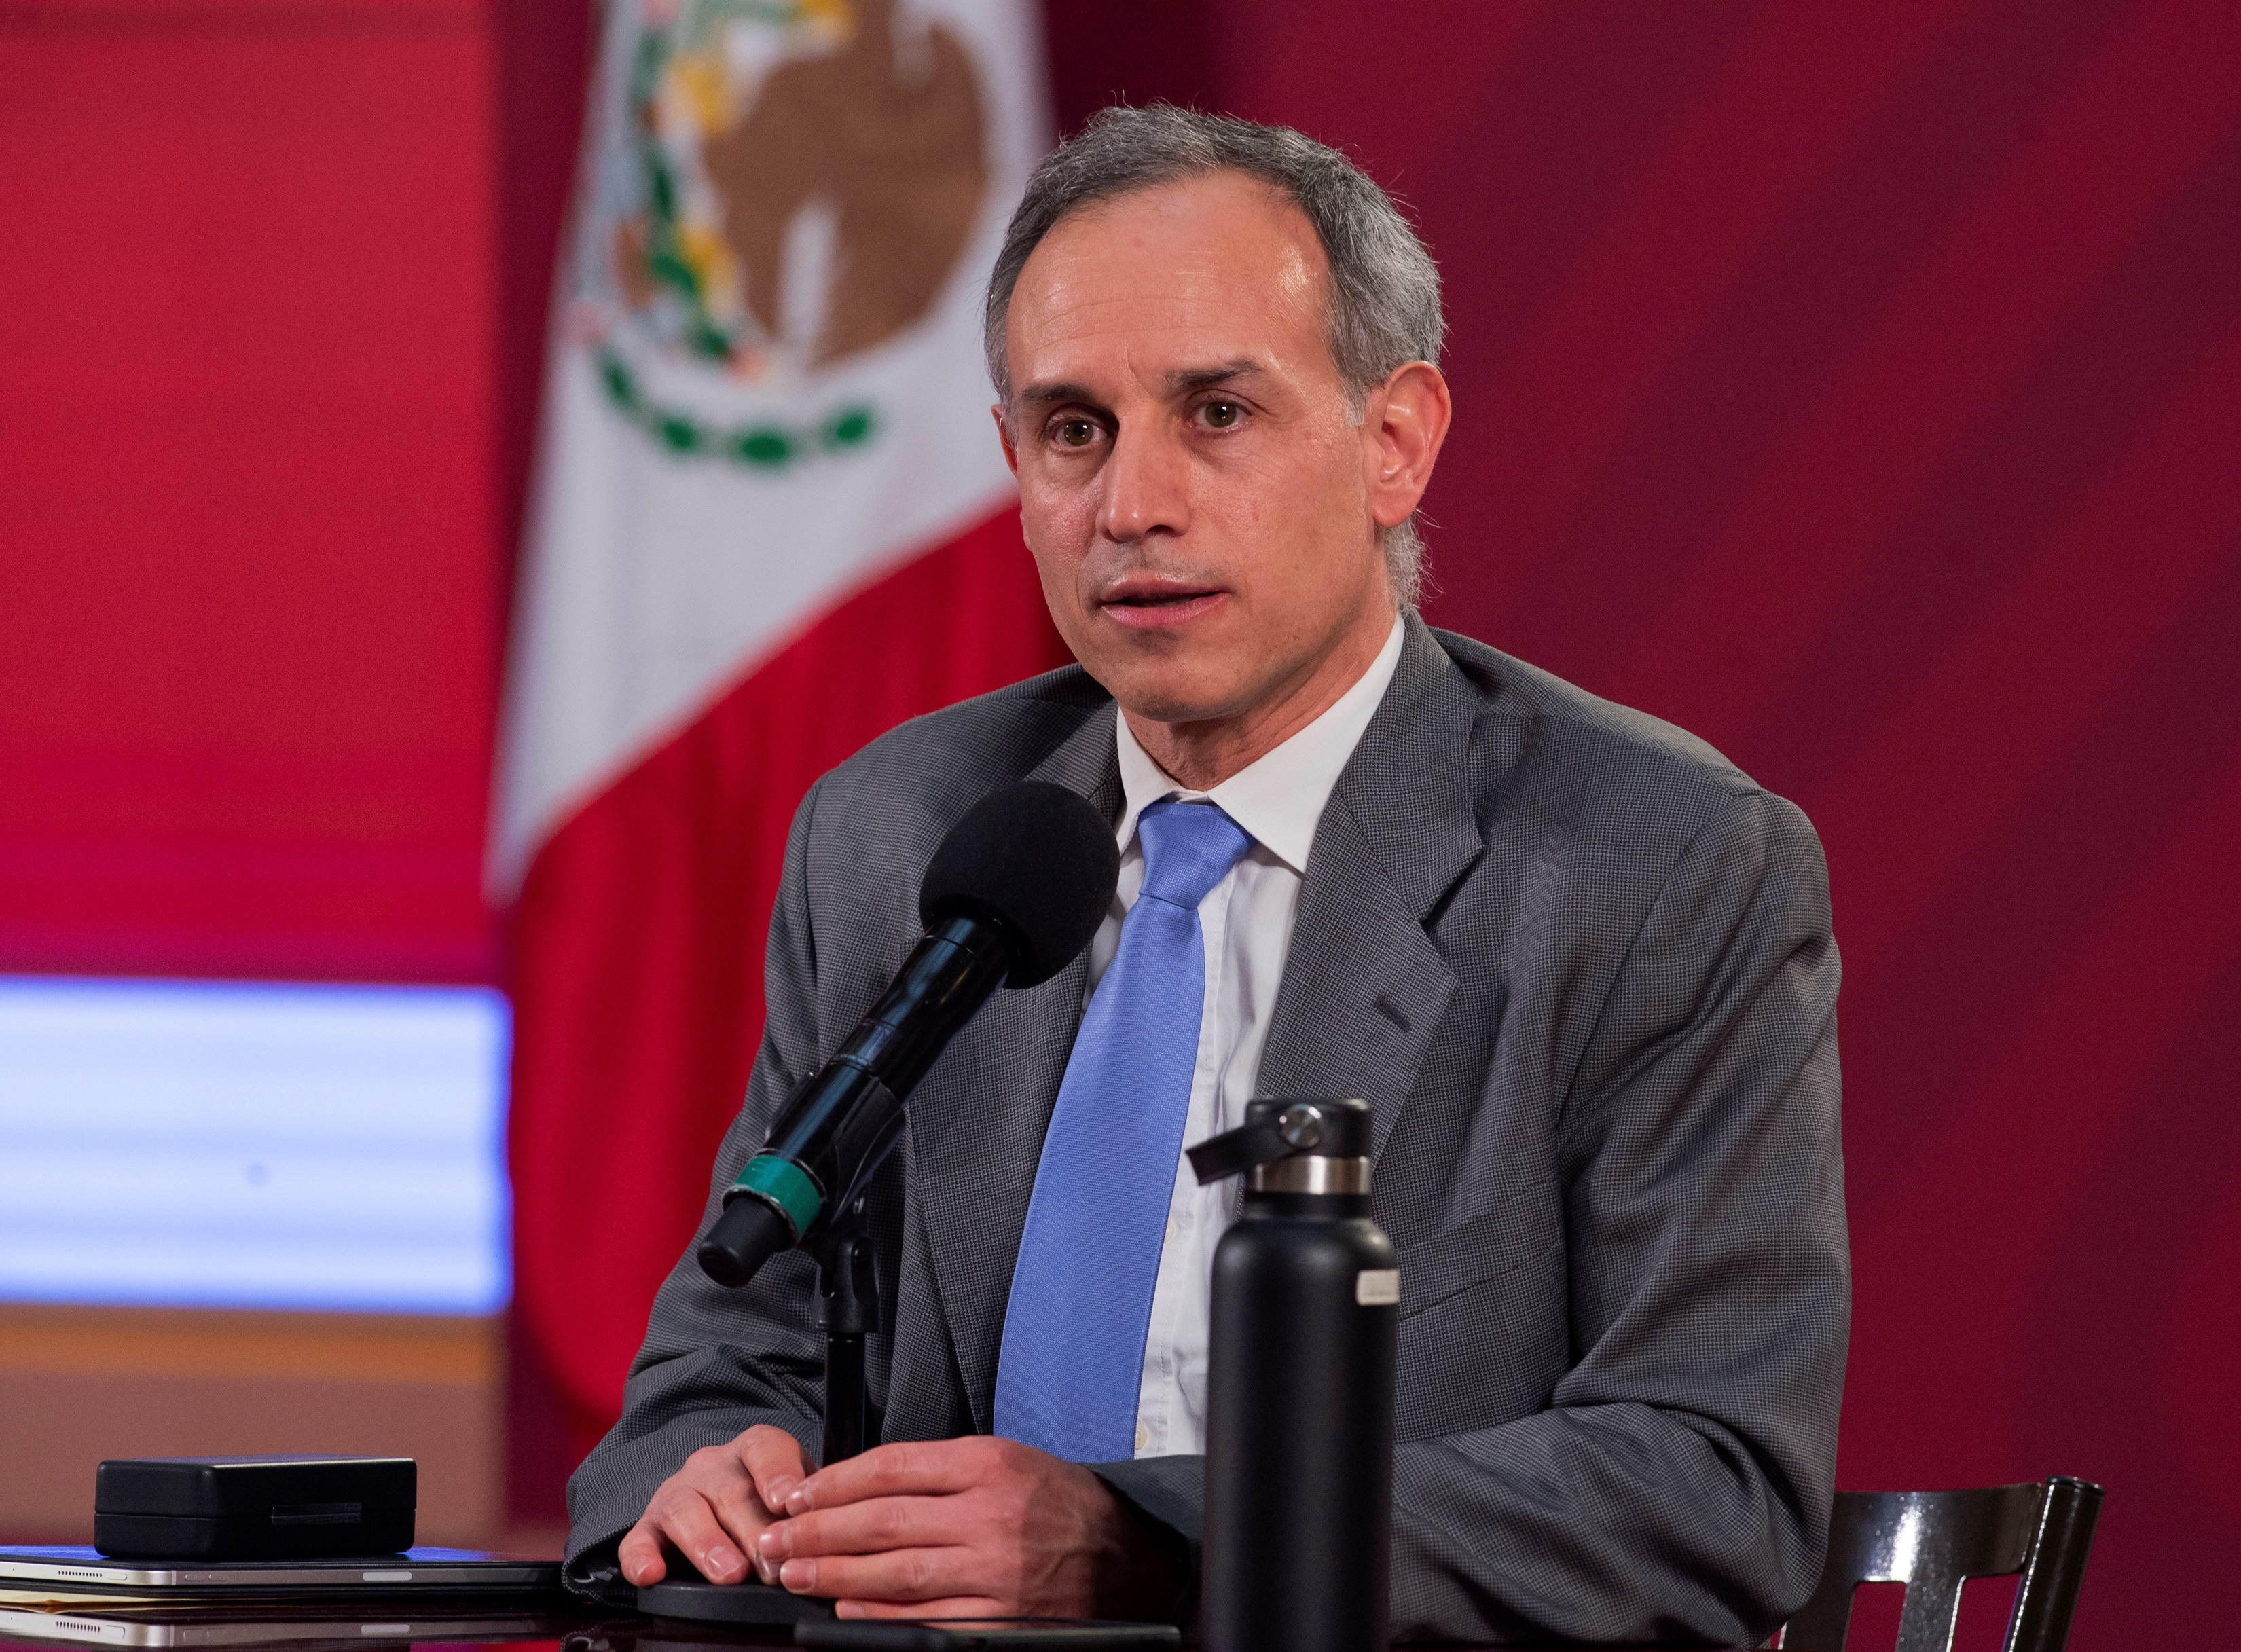 El subsecretario de prevención y Promoción de la Salud ha vuelto a ser centro de la polémica por su postura respecto al uso de la mascarilla. (Foto: Presidencia de México/EFE)
